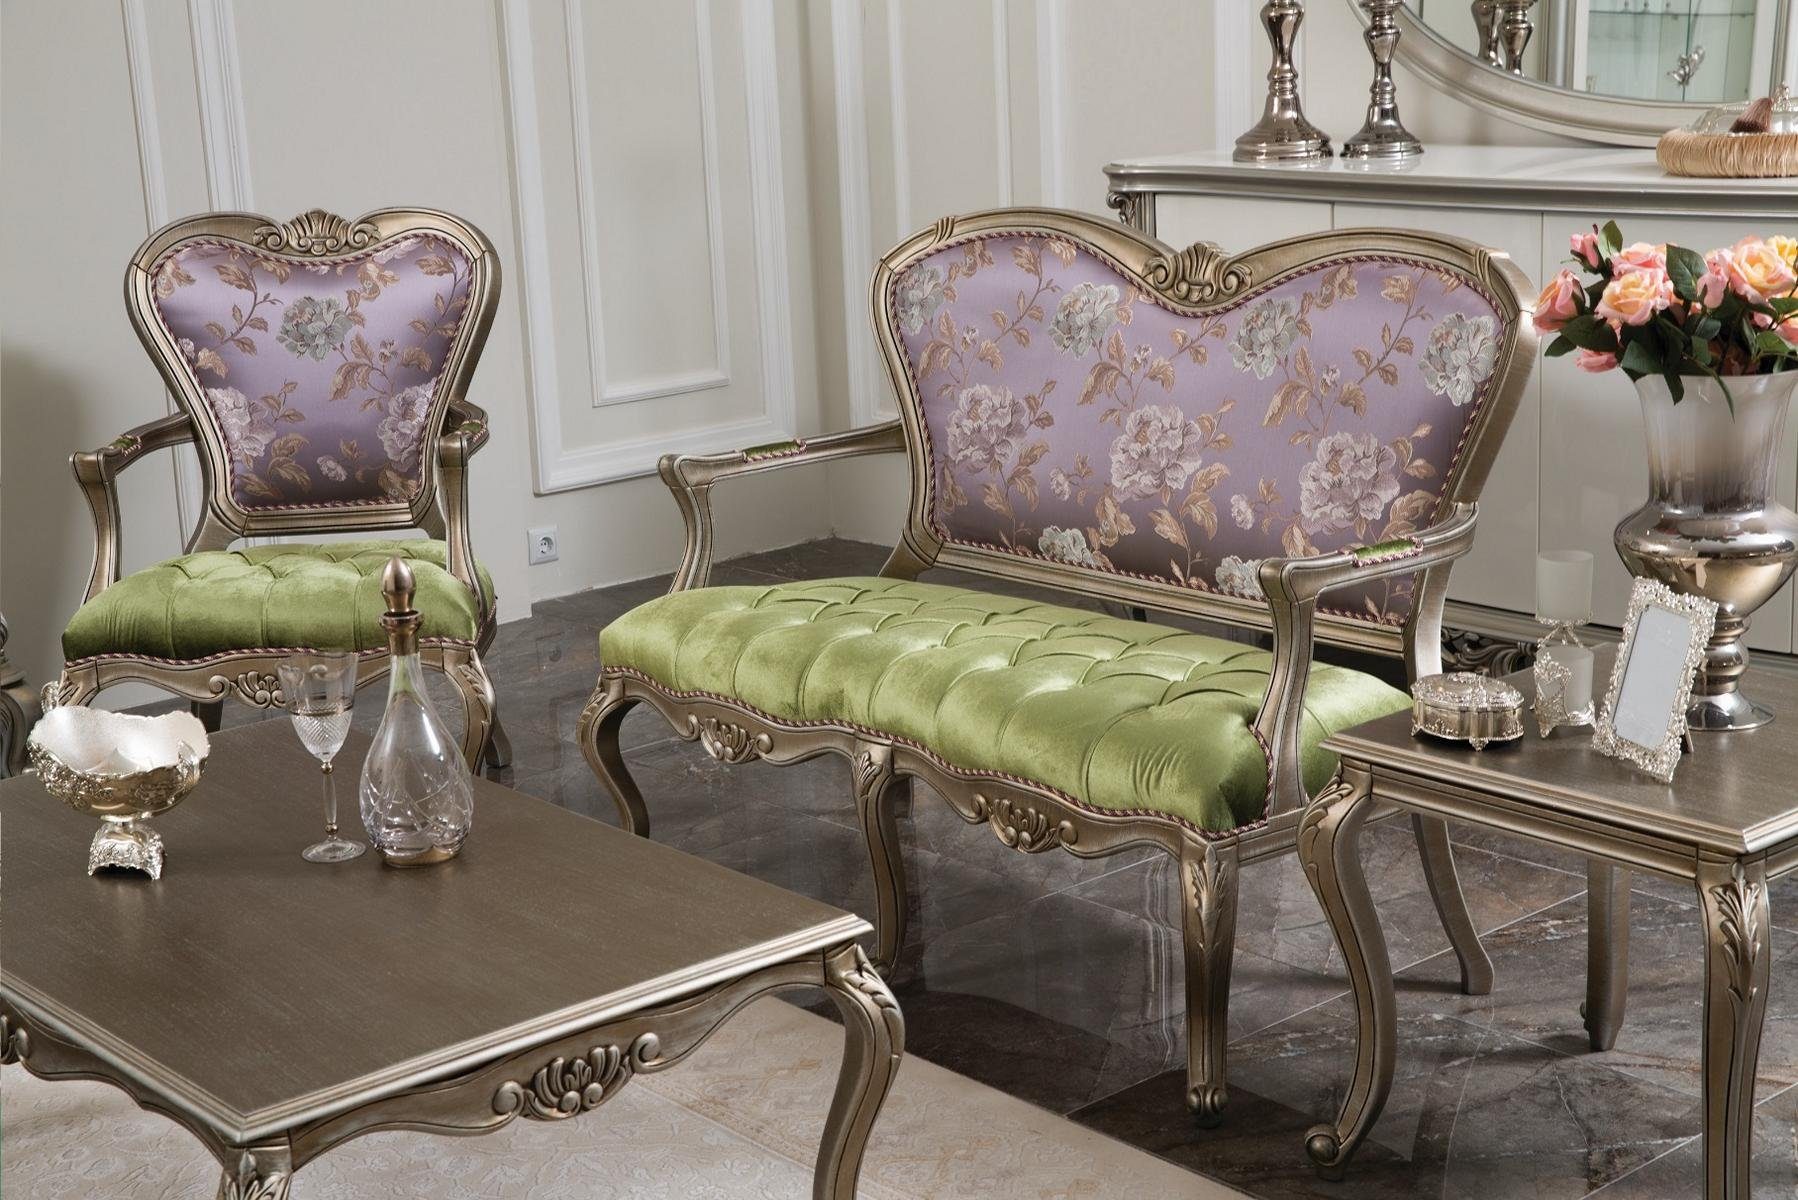 JVmoebel Sessel, Sessel 1 Sitzer Grün Elegantes Wohnzimmer Design Luxus Möbel